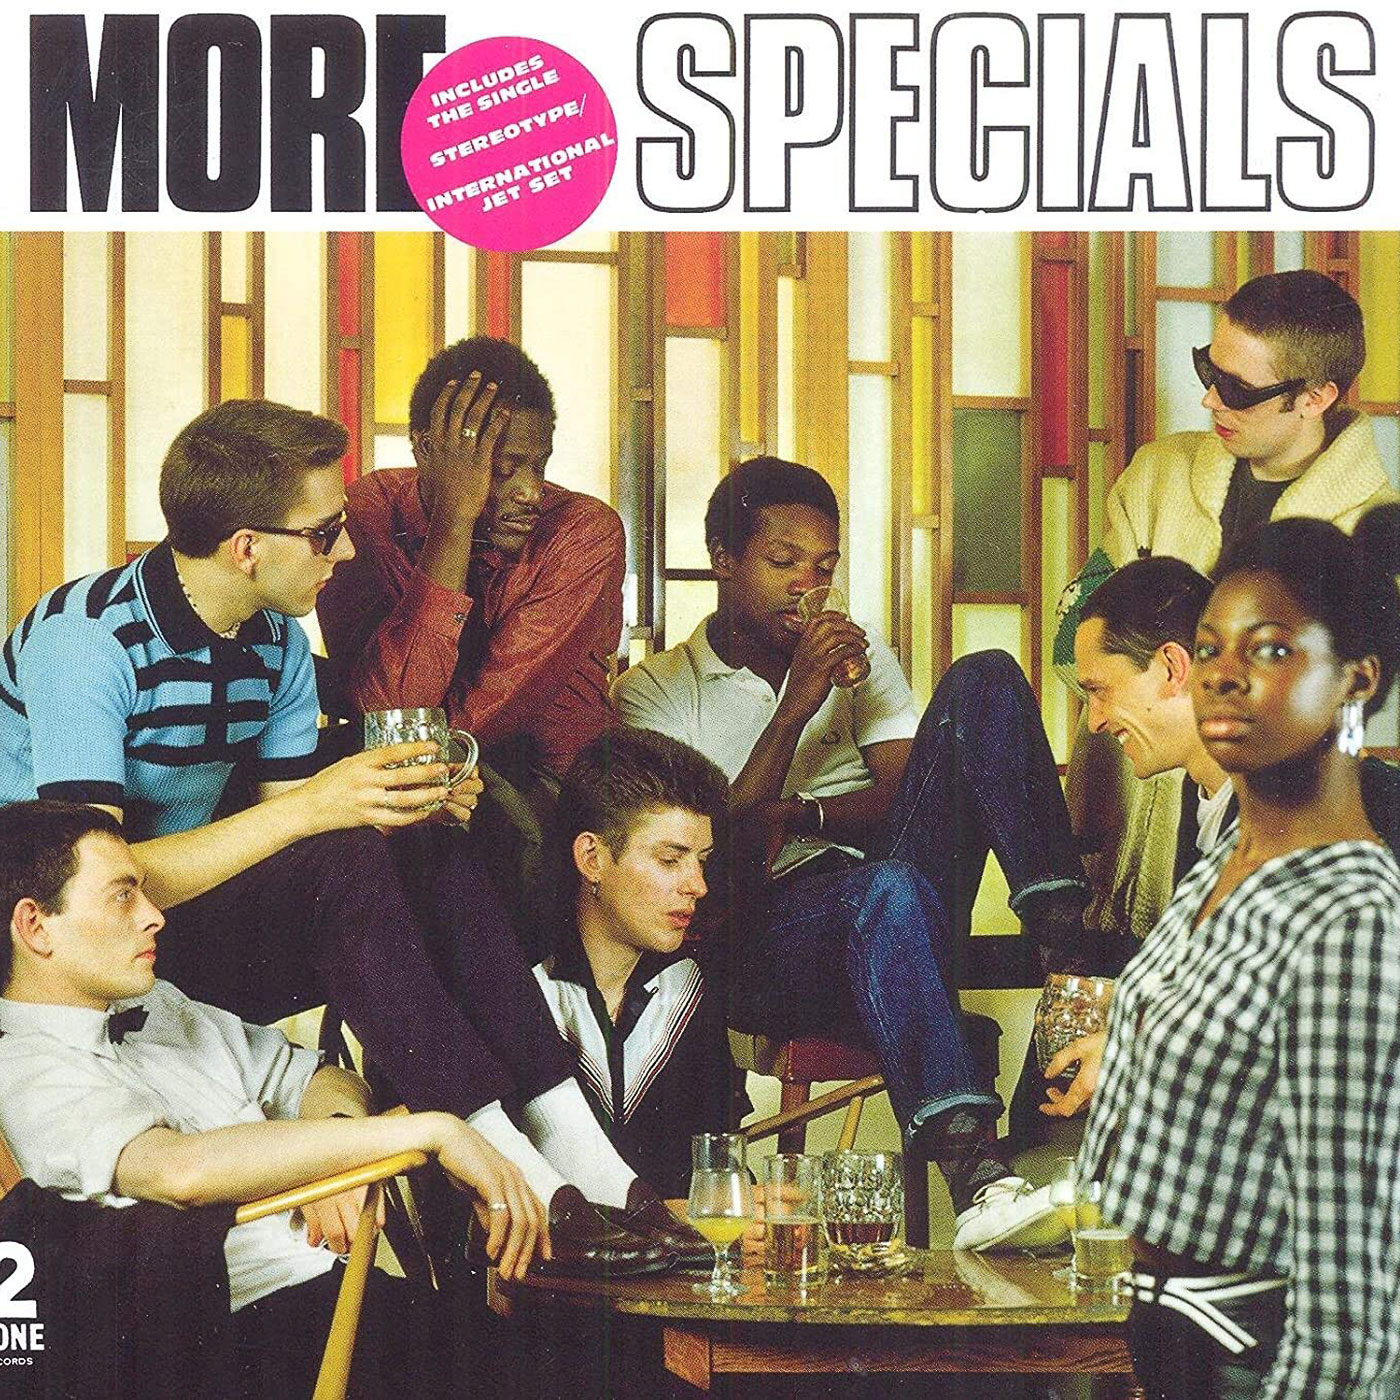 475 The Specials – More Specials